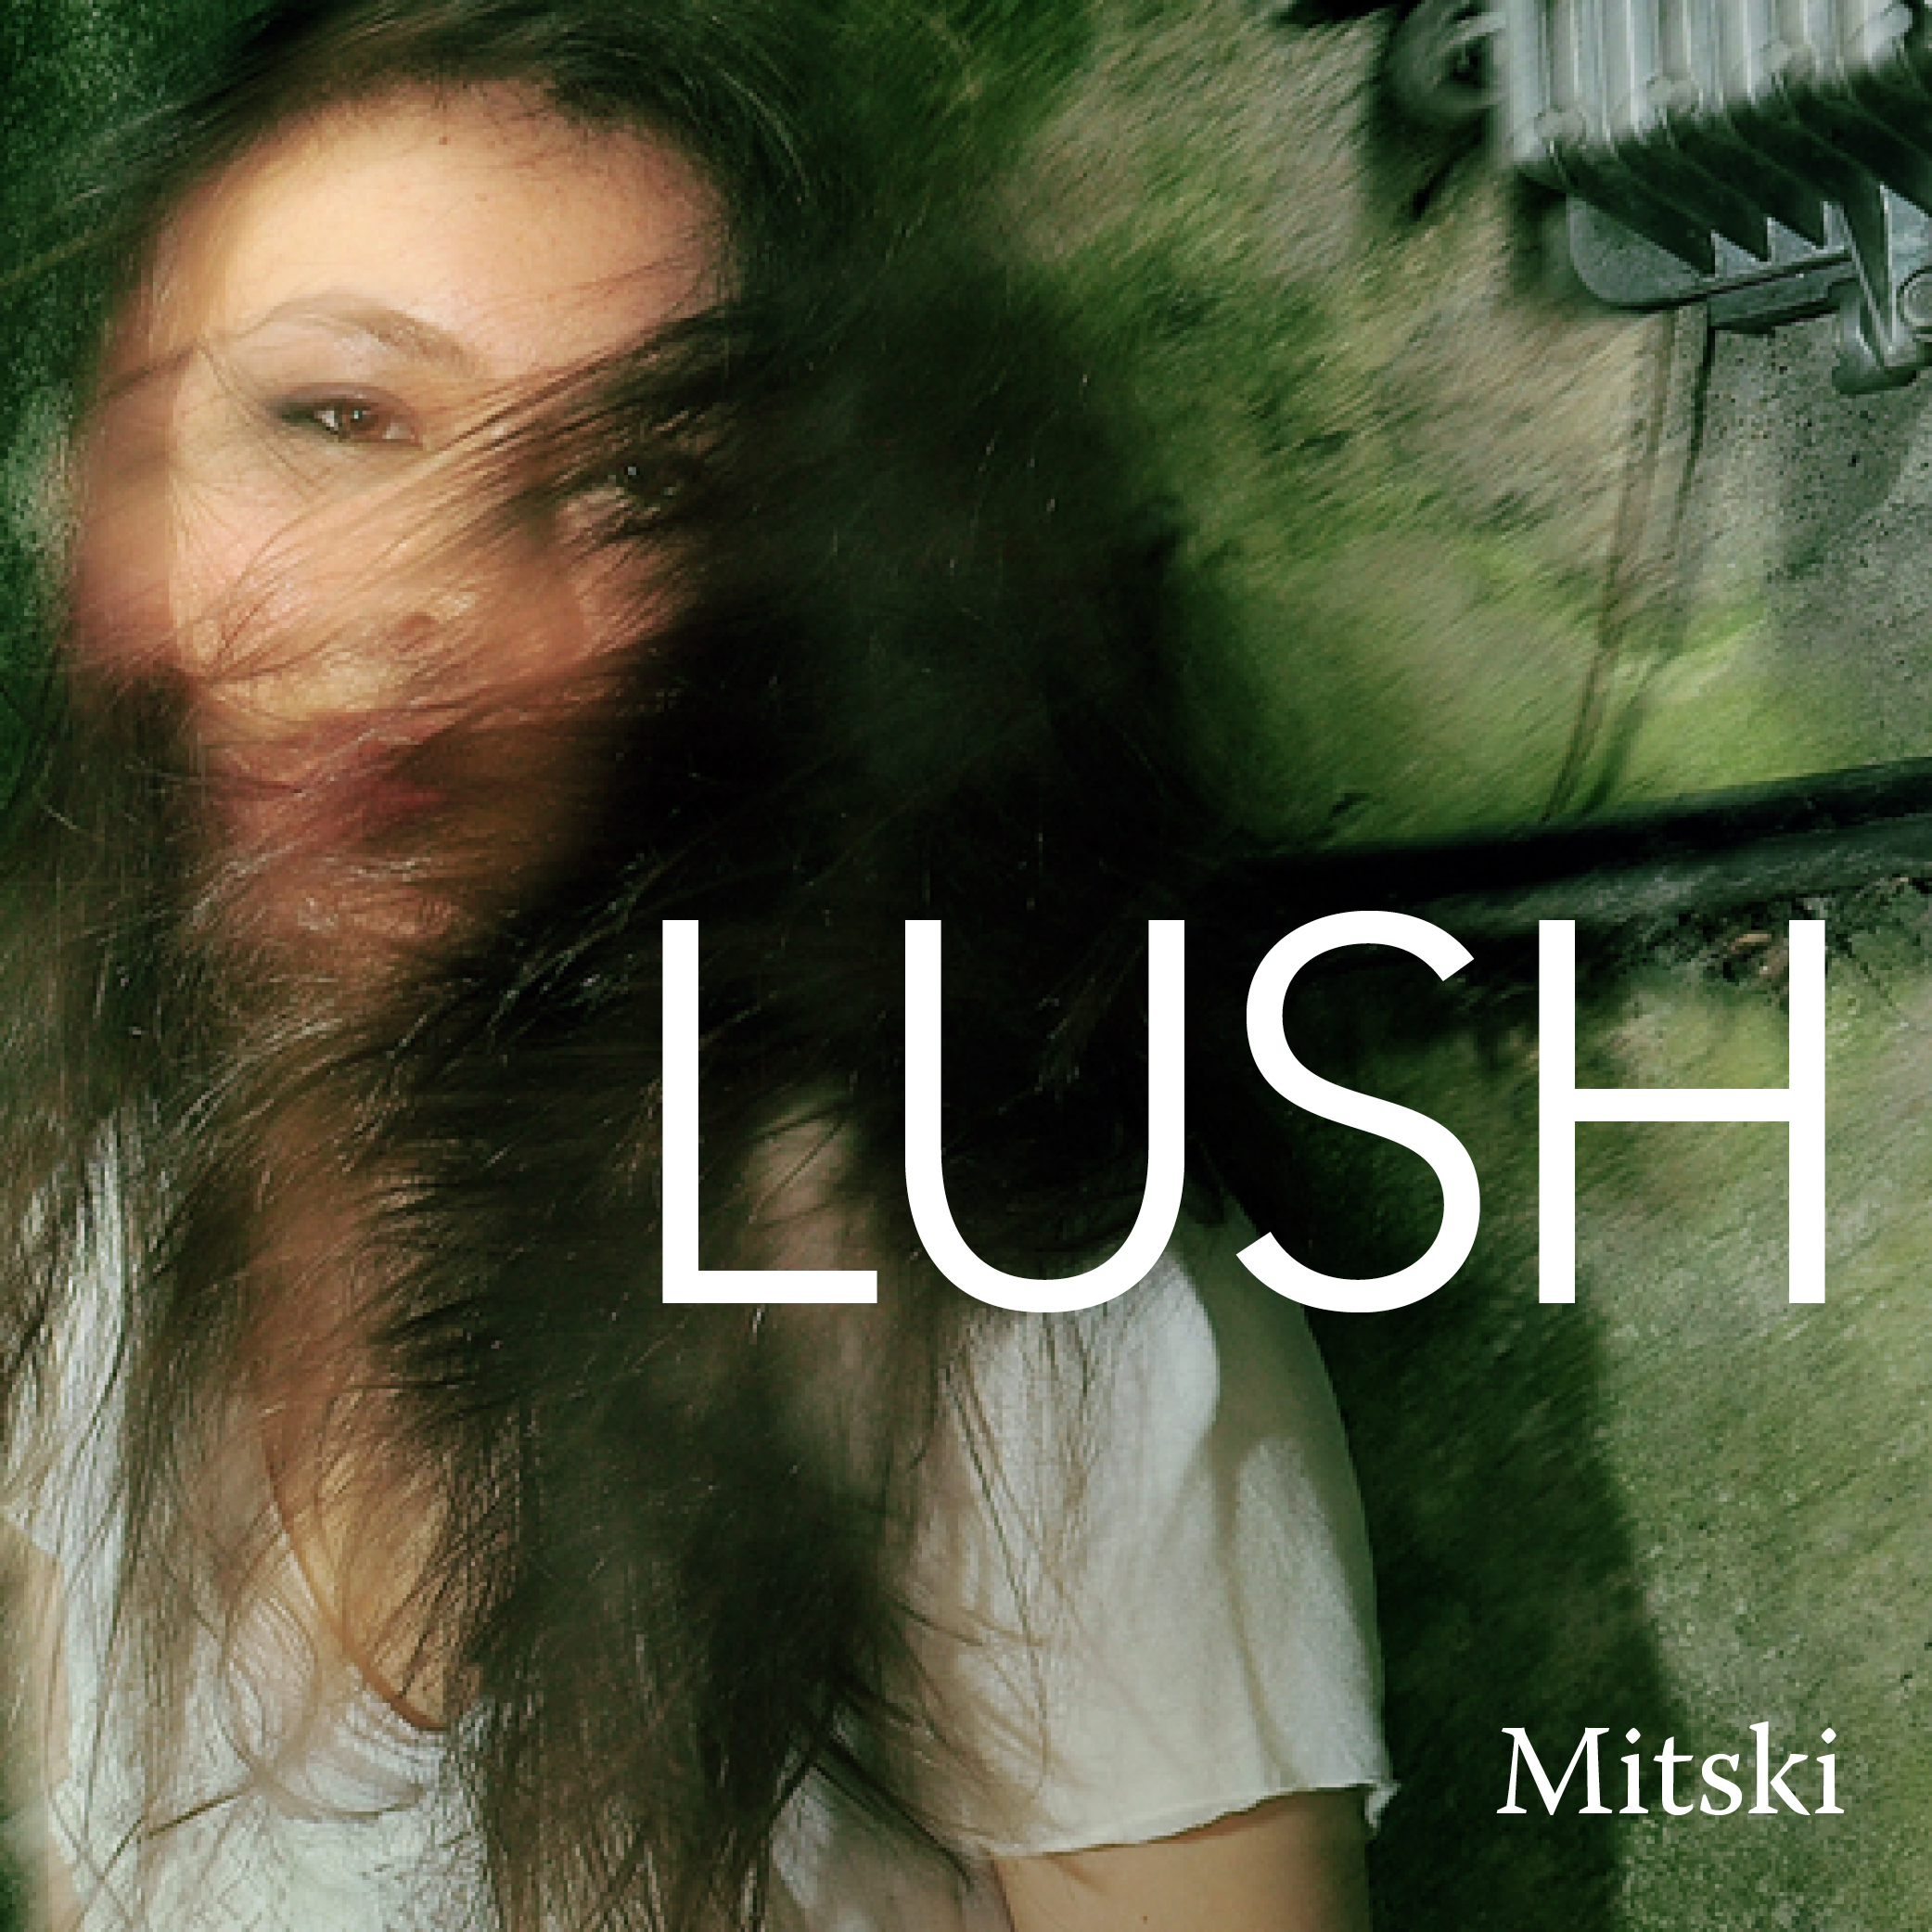 Mitski liquid smooth cover in 17edo. Mitski дискография. Альбом lush Mitski. Mitski обложка альбома. Liquid smooth Mitski обложка.